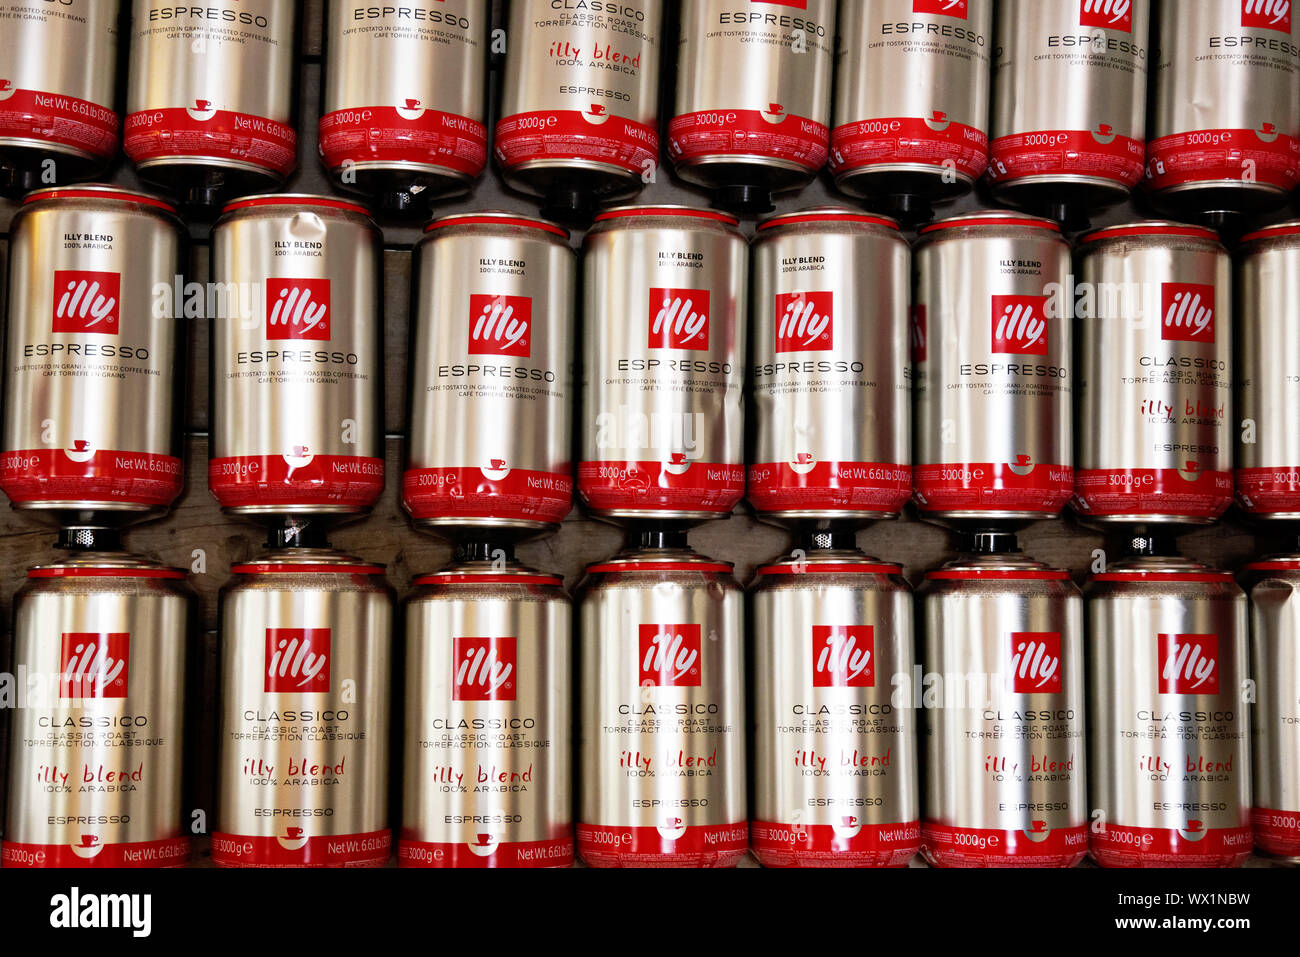 Illy Kaffee Dosen verzieren die Wand eines Restaurant Stockfotografie -  Alamy